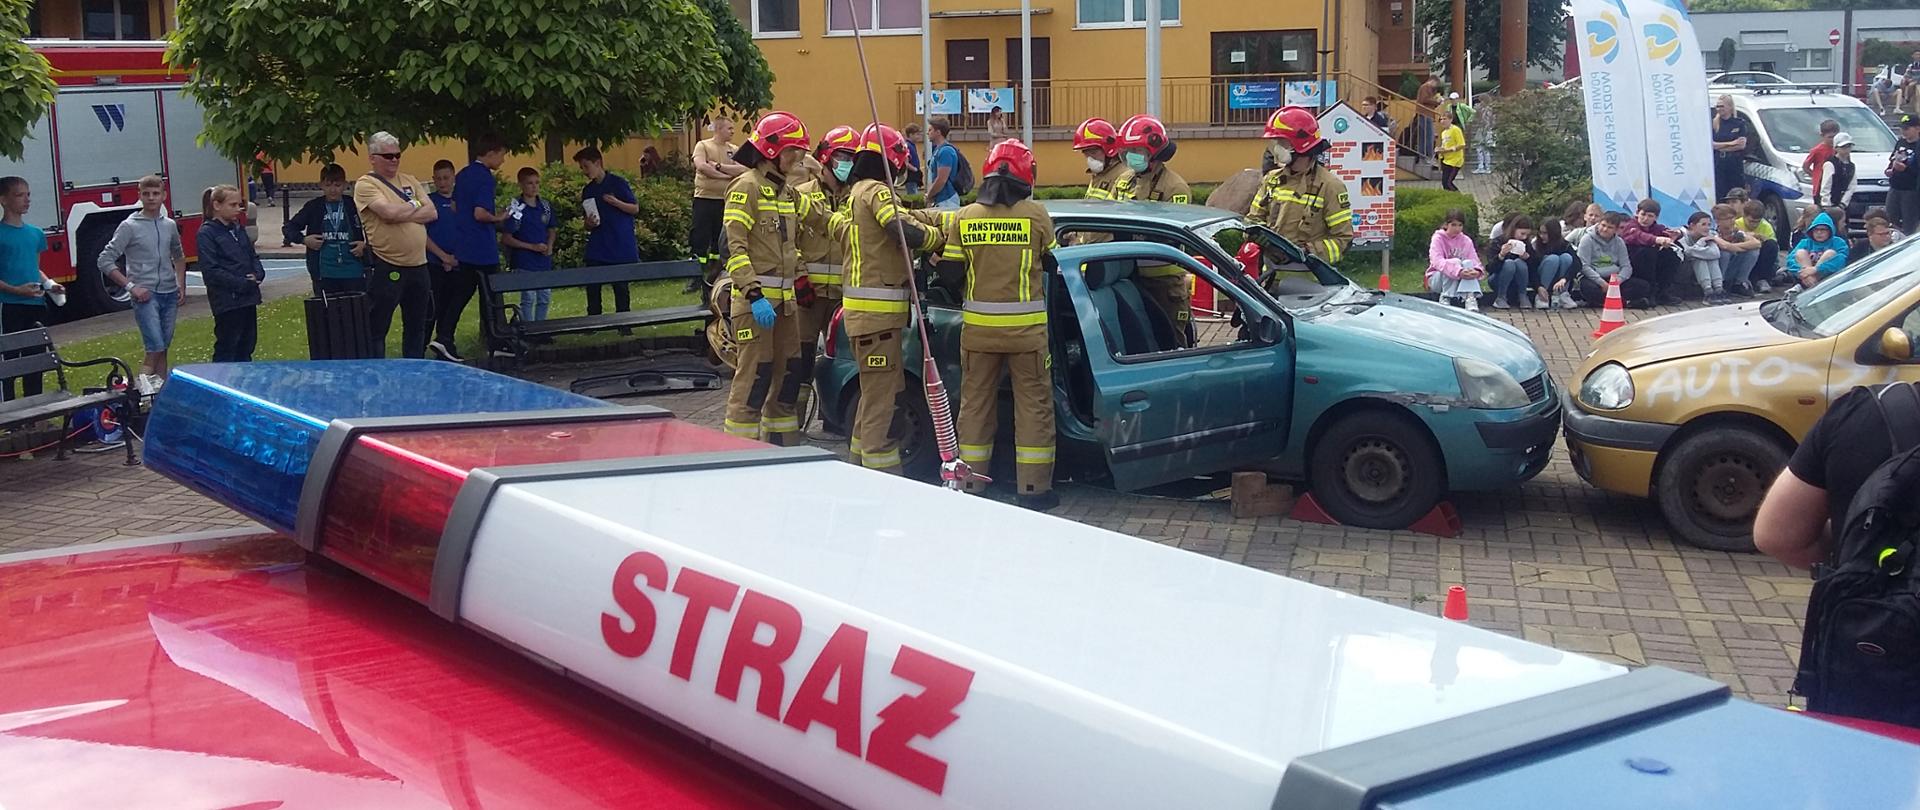 Na pierwszym planie belka sygnalizacyjna pojazdu pożarniczego. W tle strażacy w trakcie pokazów ewakuują osobę z uszkodzonego pojazdu.